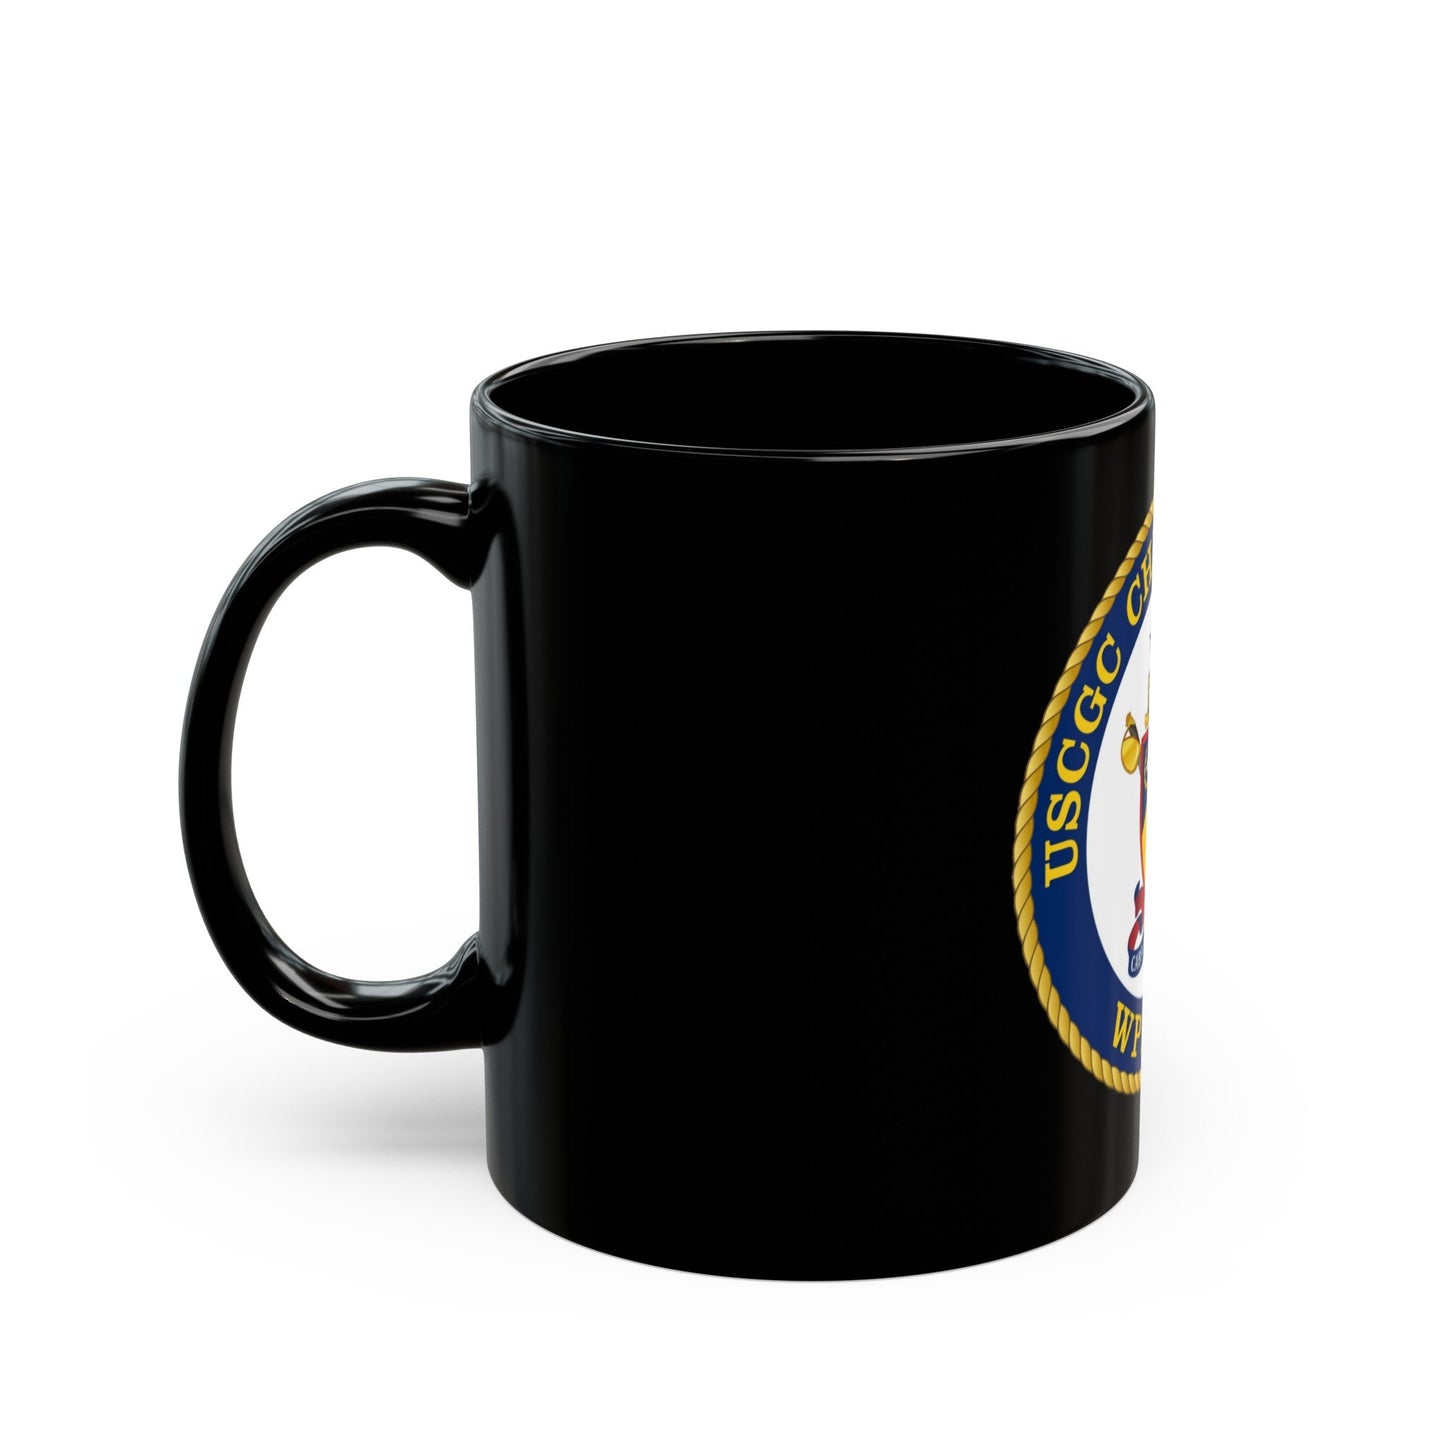 USCGC Chincoteague WPB 1320 (U.S. Coast Guard) Black Coffee Mug-The Sticker Space